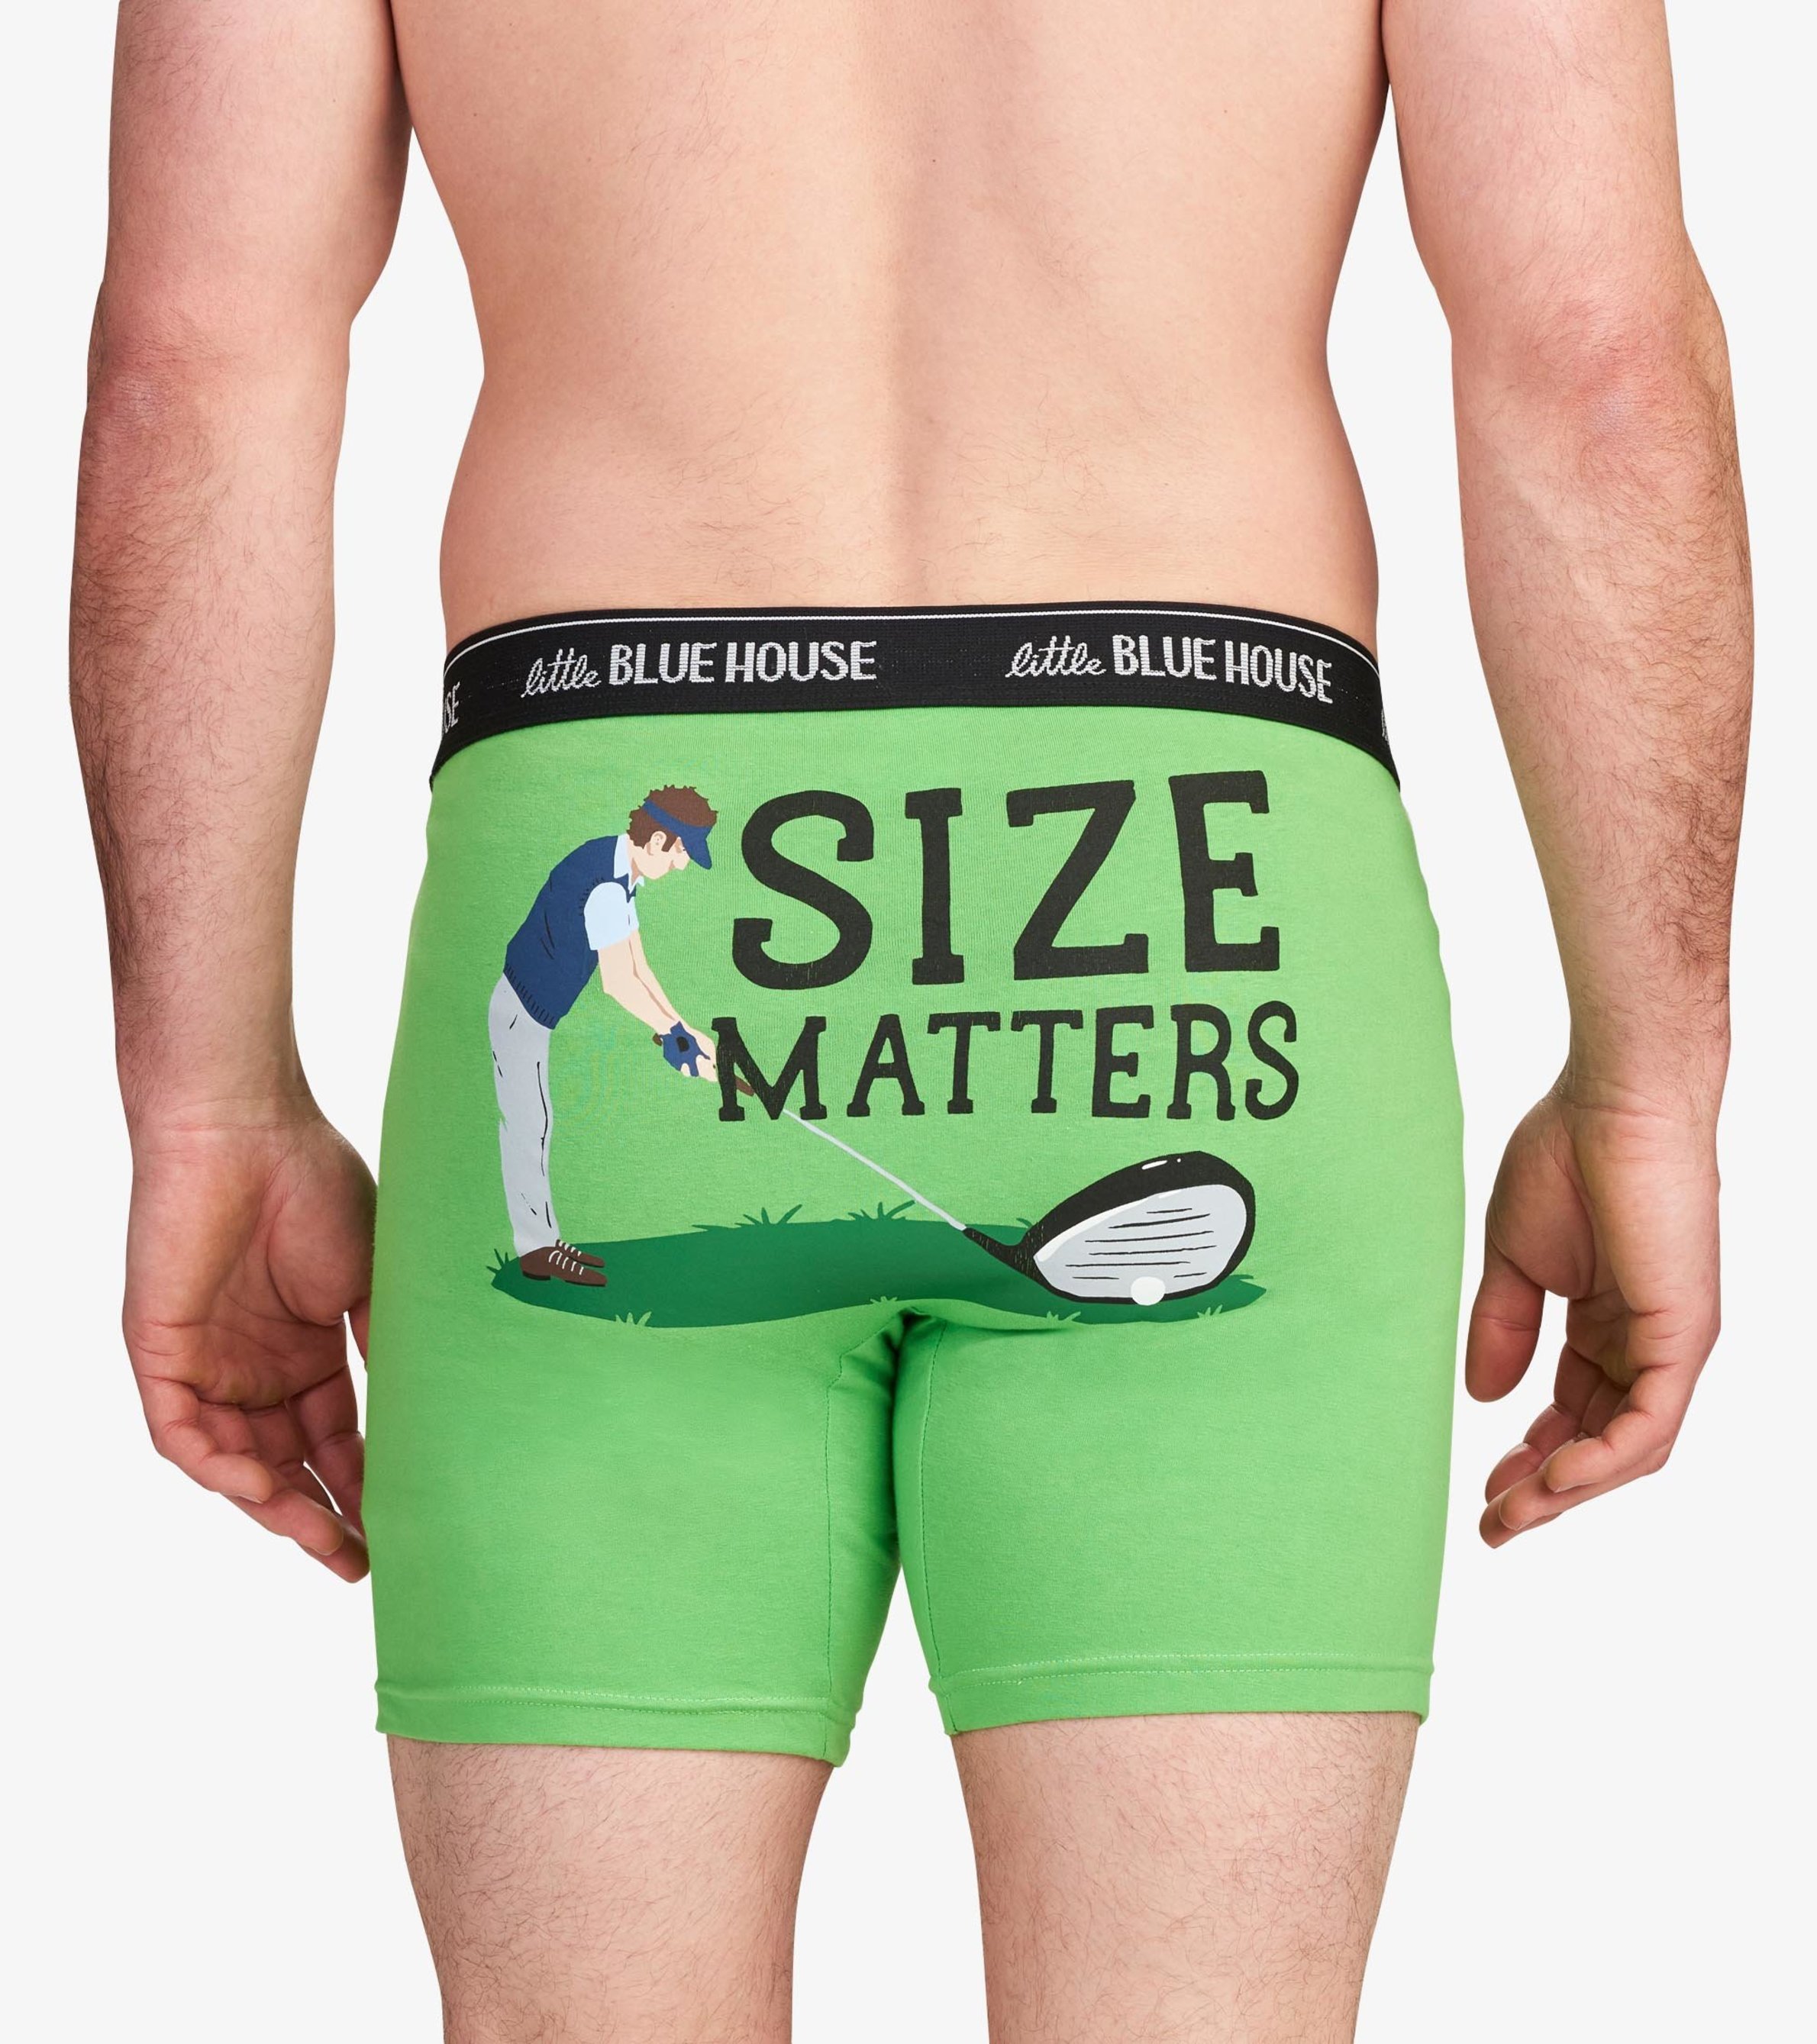 Golf Size Matters Men's Boxer Briefs - Little Blue House US